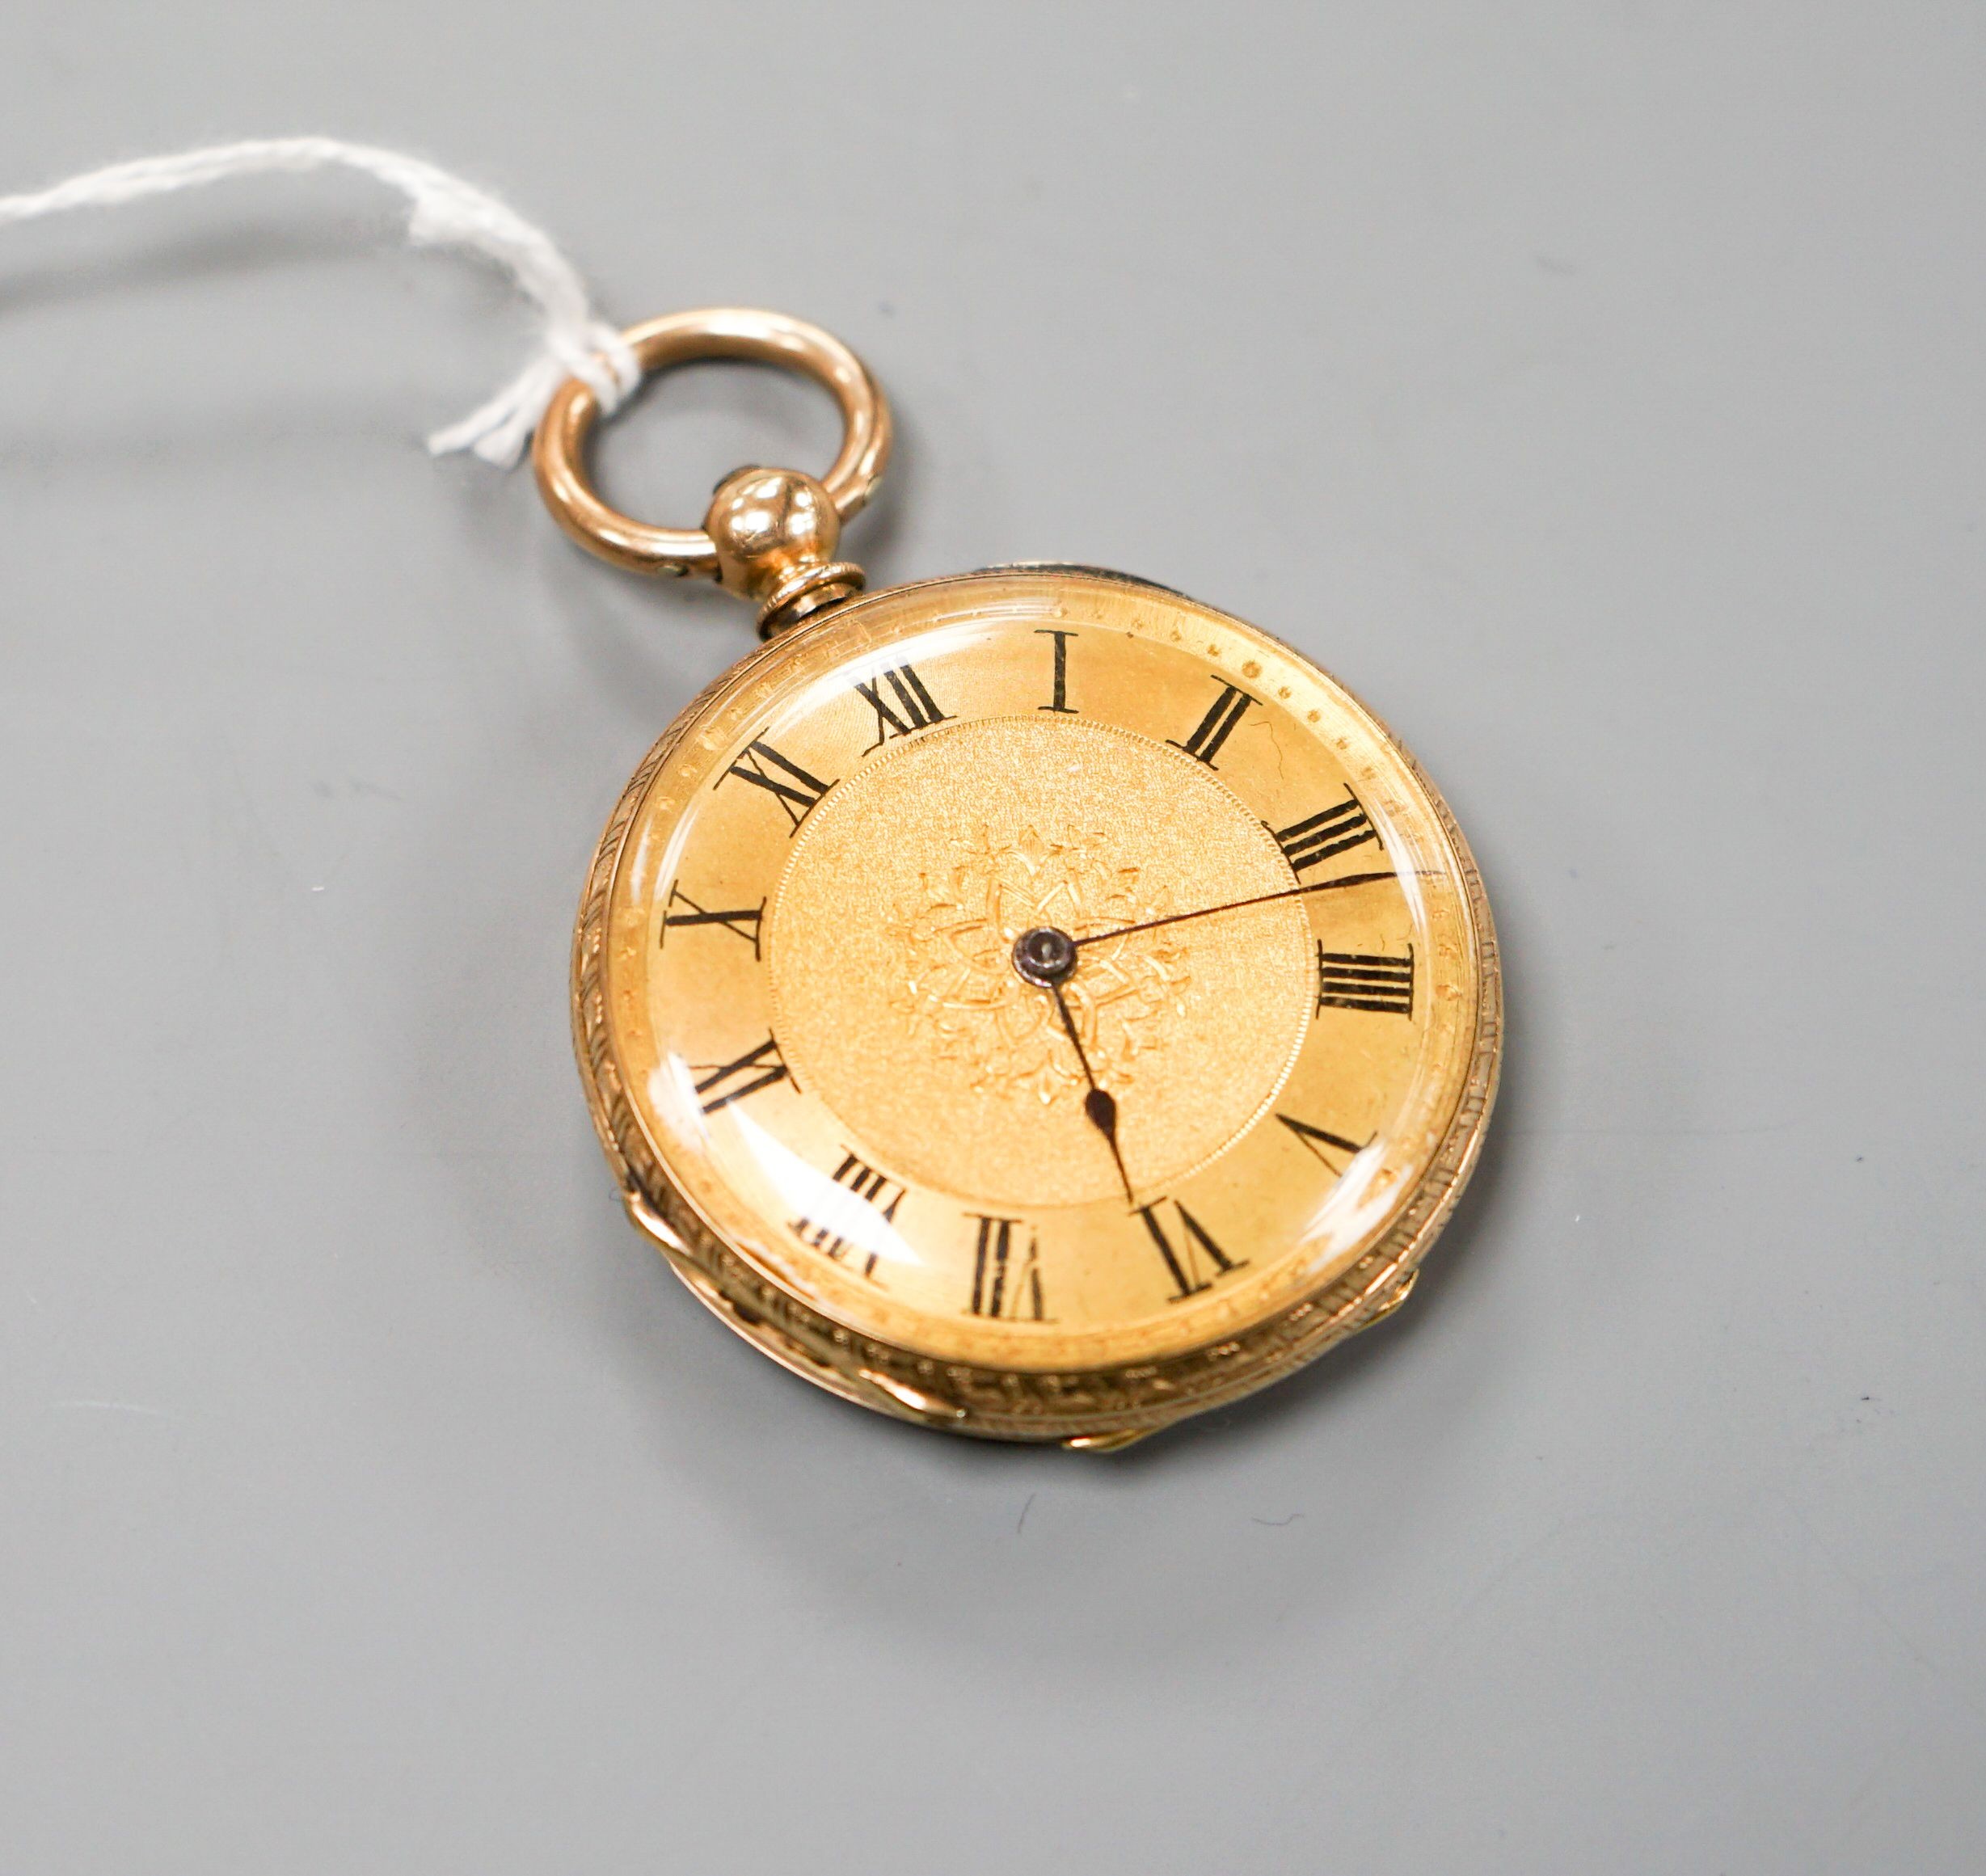 An engraved 14k open face keywind fob watch, case diameter 40mm, gross weight 51.4 grams.